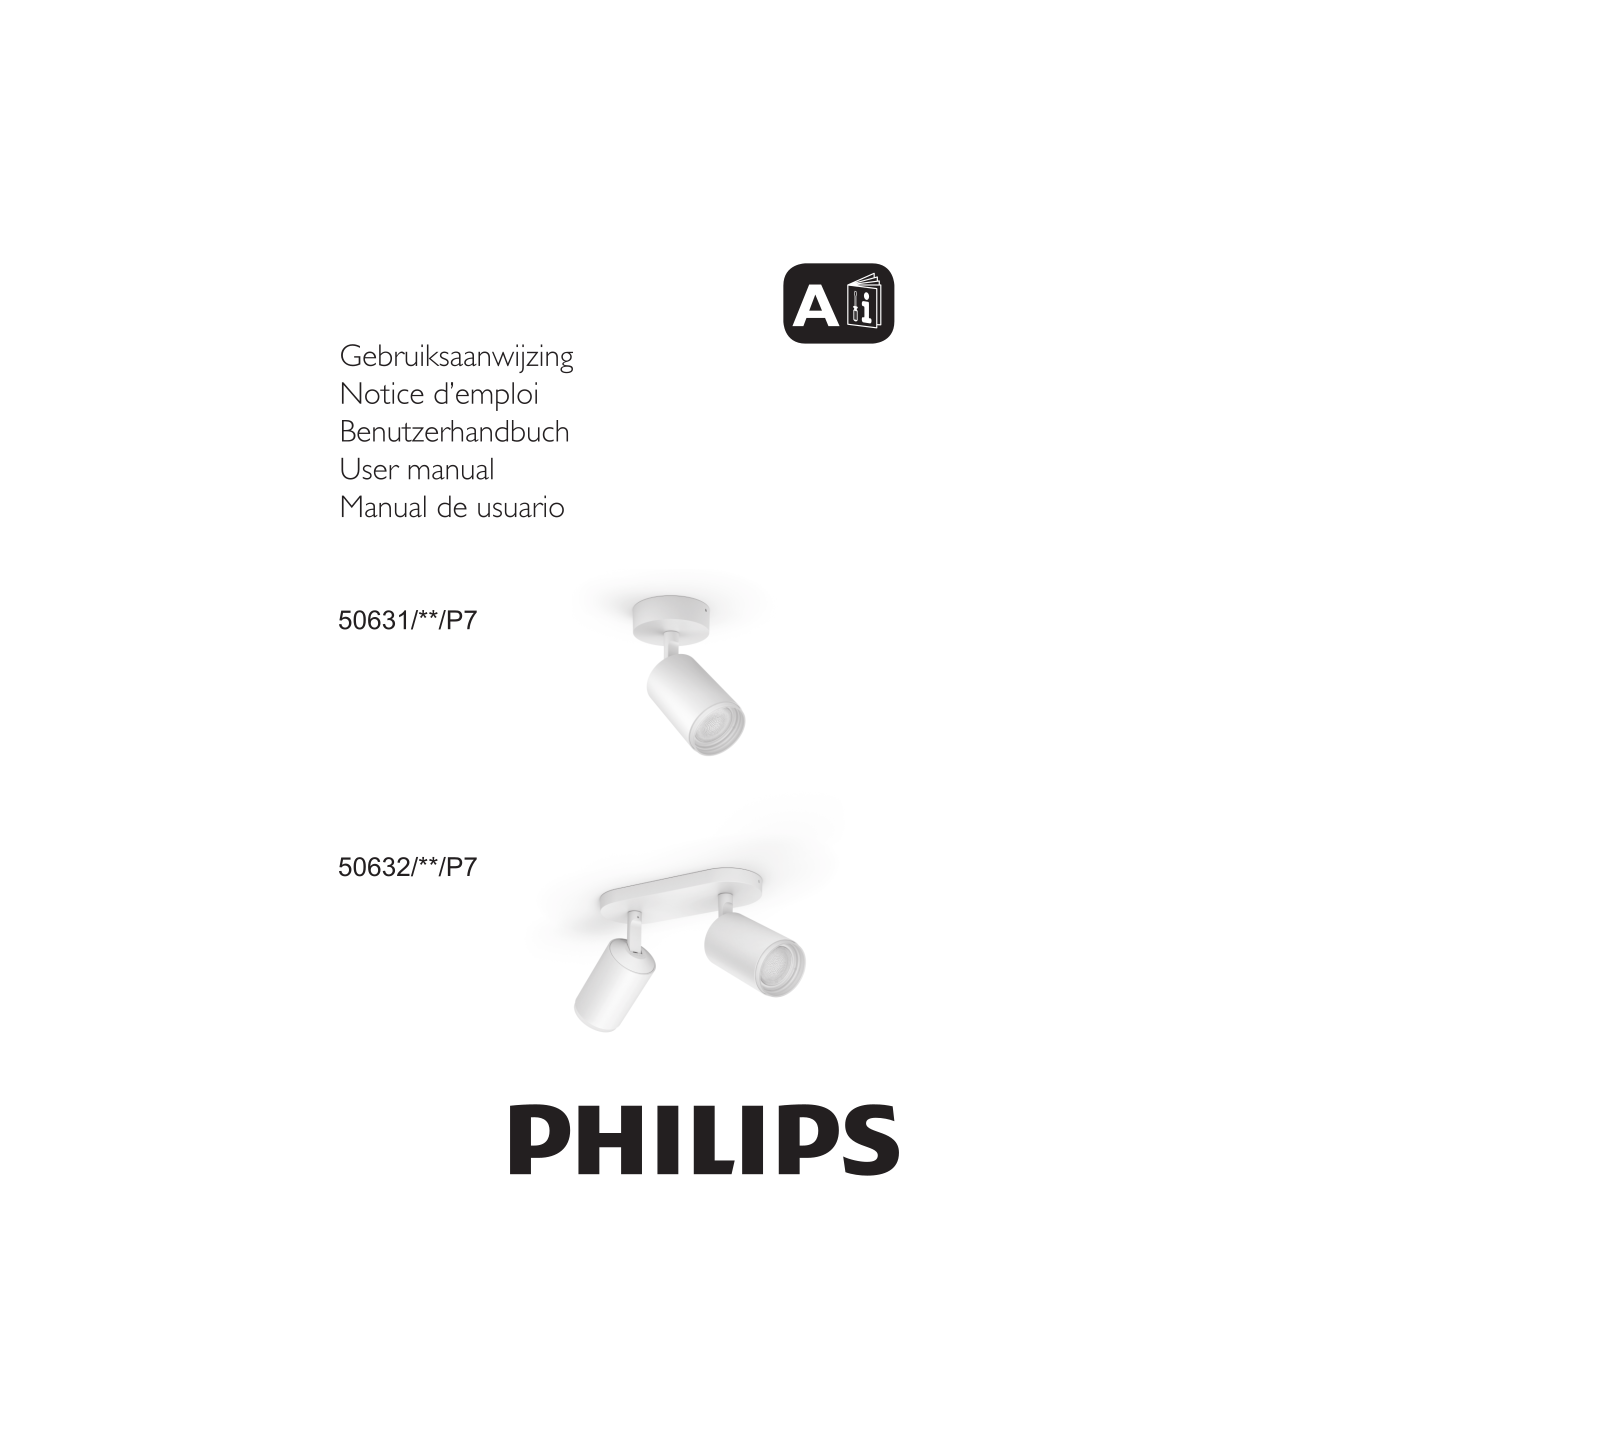 Philips 50631/**/P7, 50632/**/P7 User manual